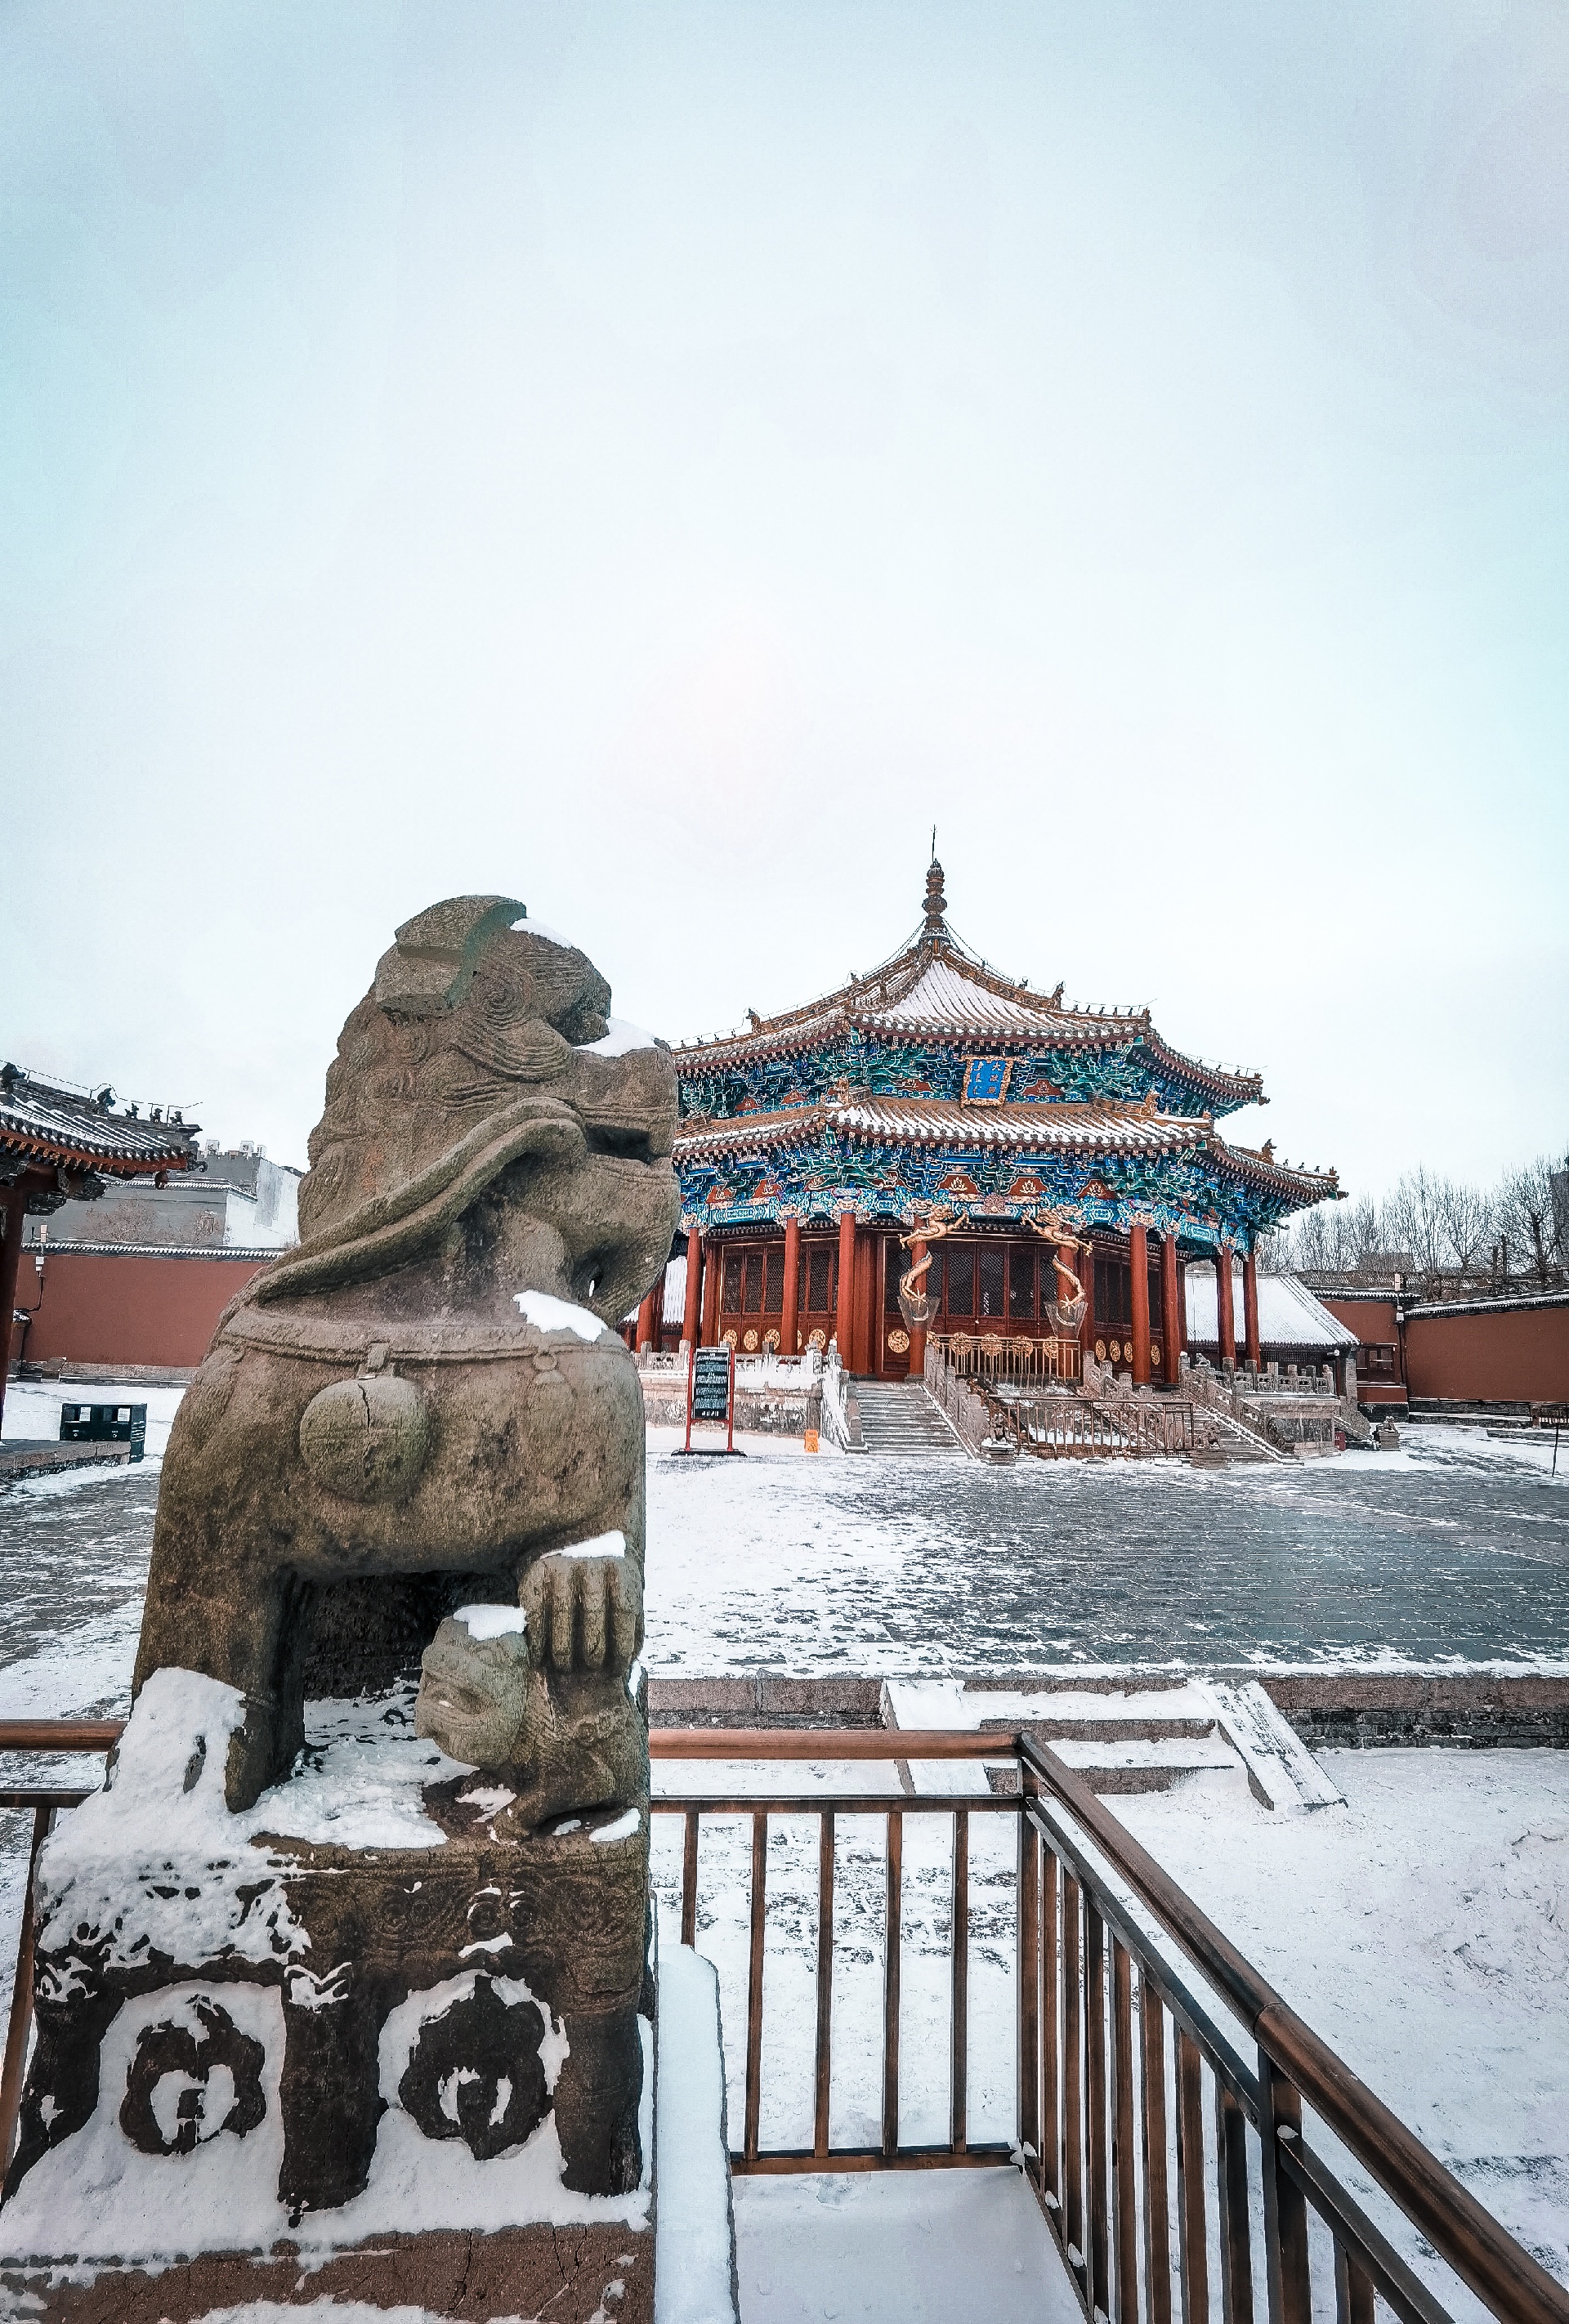 一下雪沈阳就变成了盛京——沈阳故宫博物院